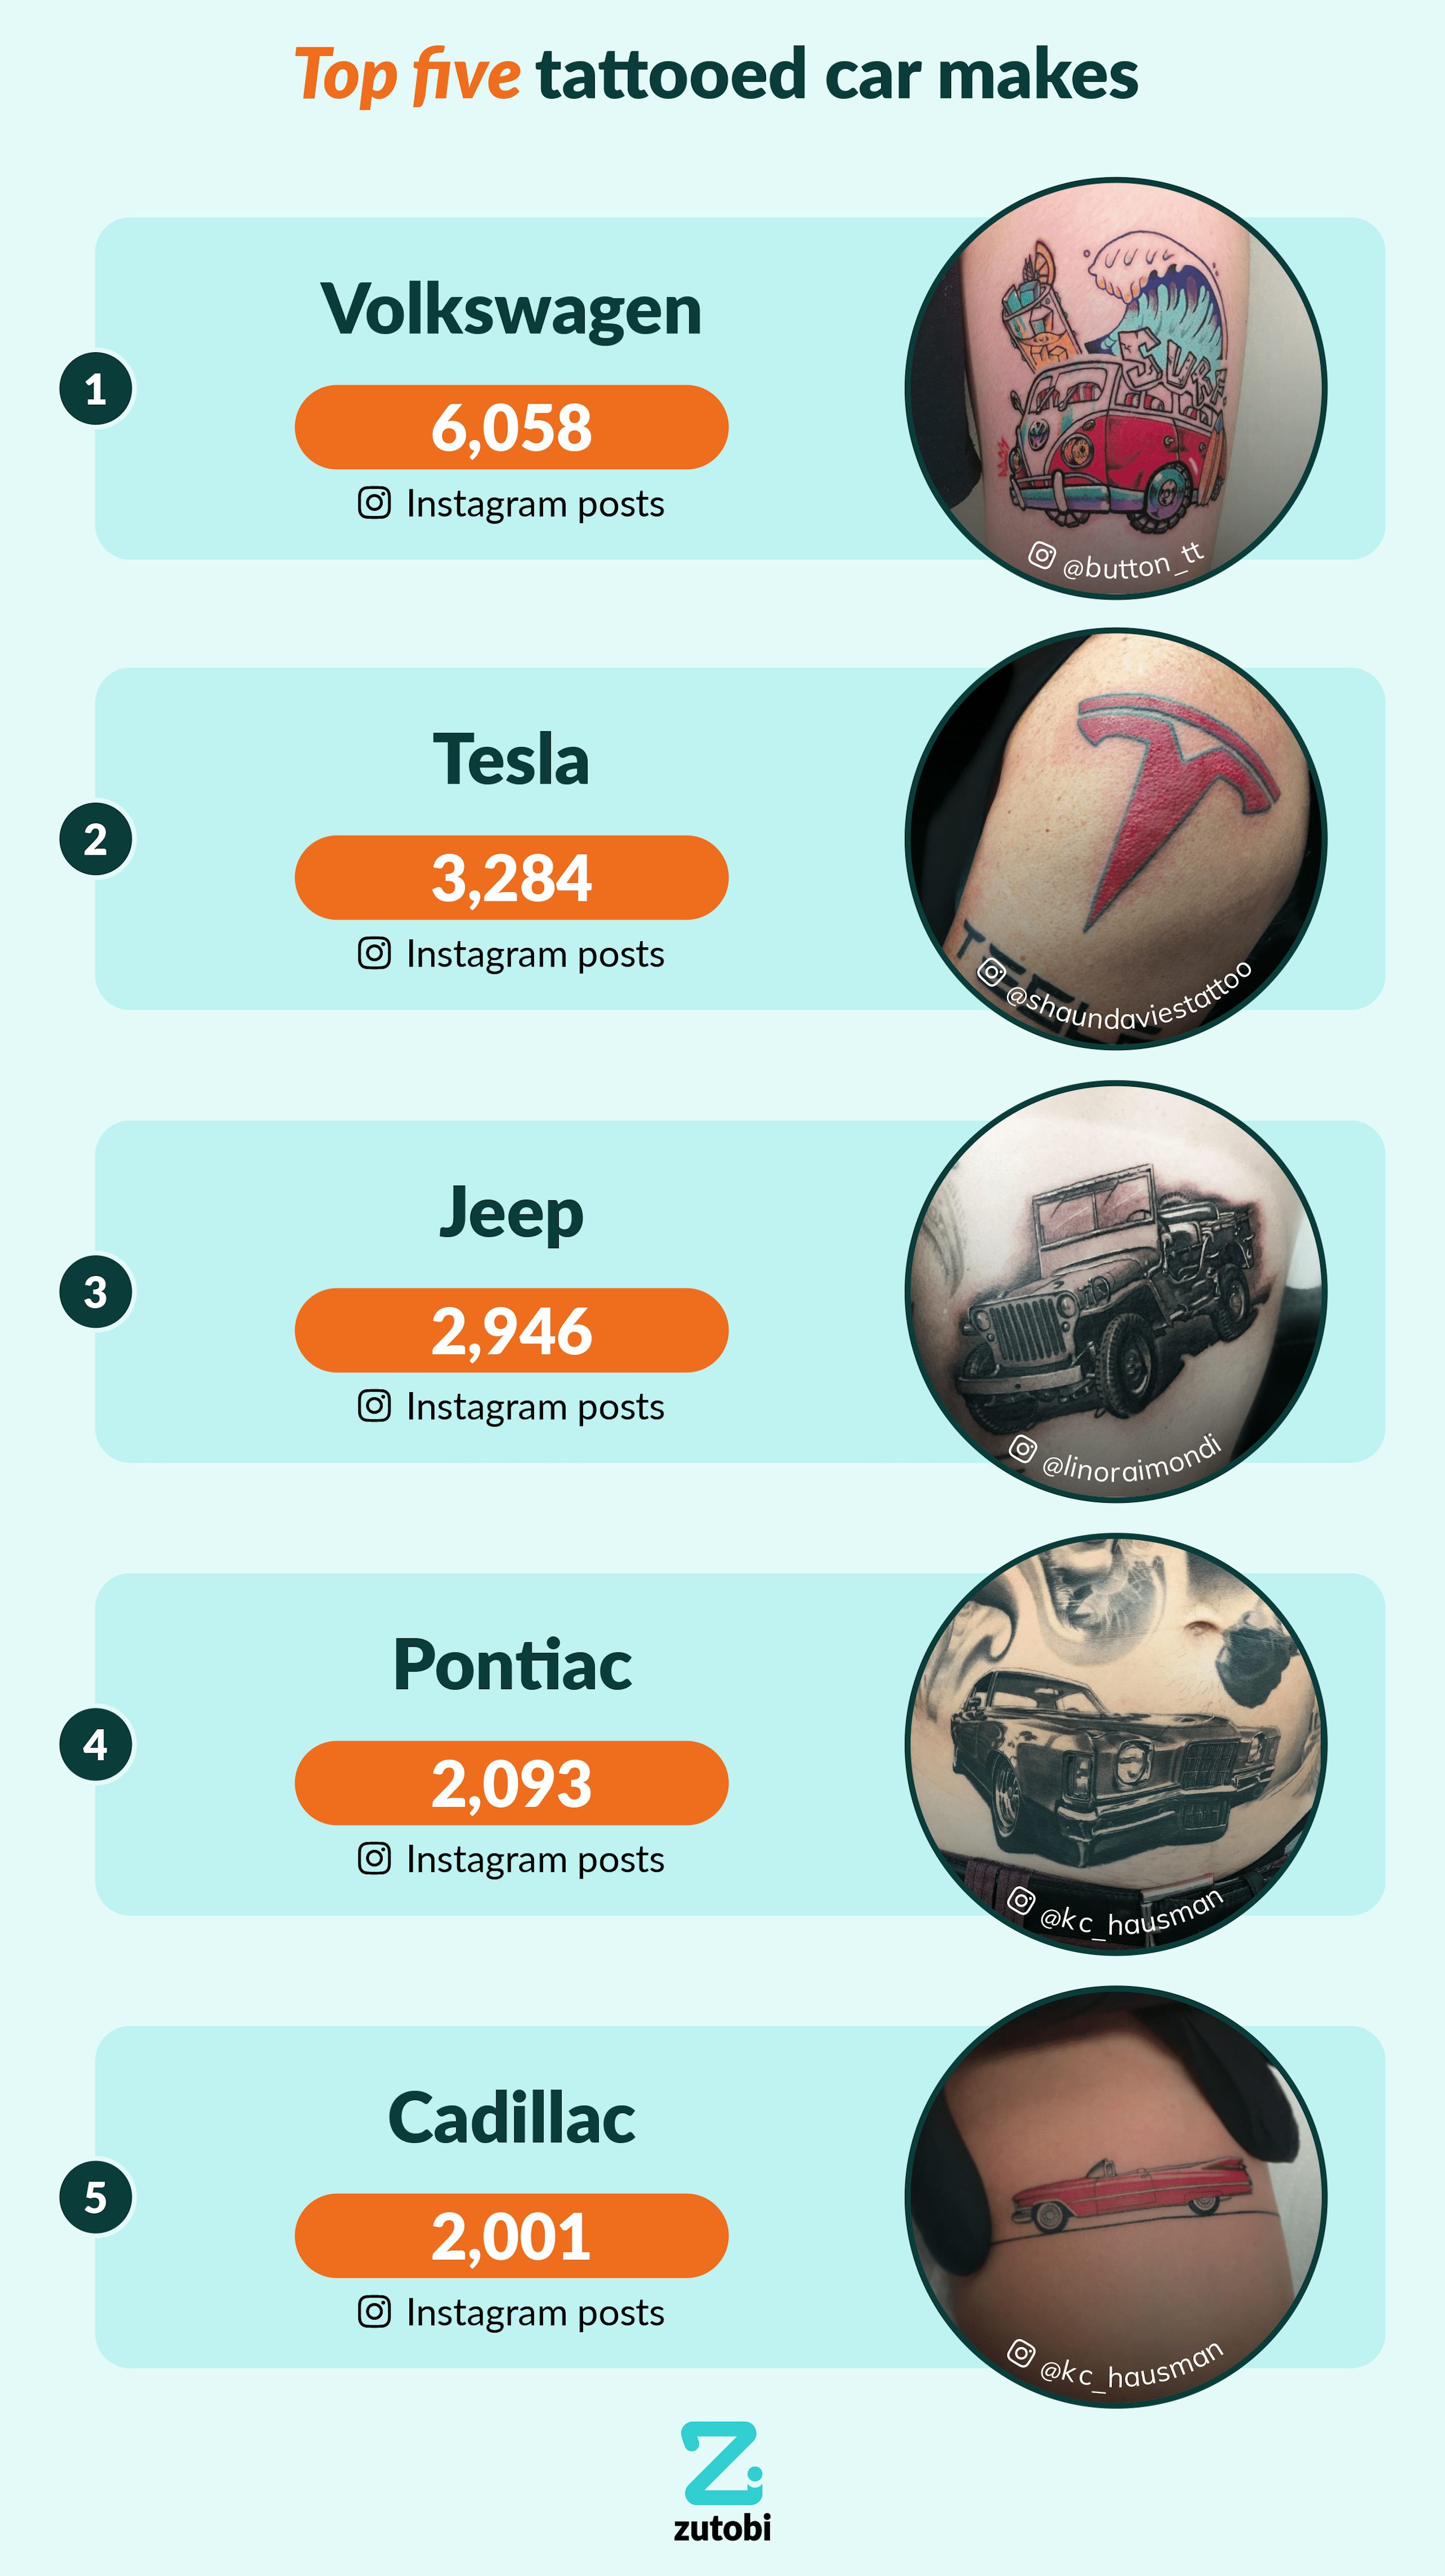 Top five tattooed car brands